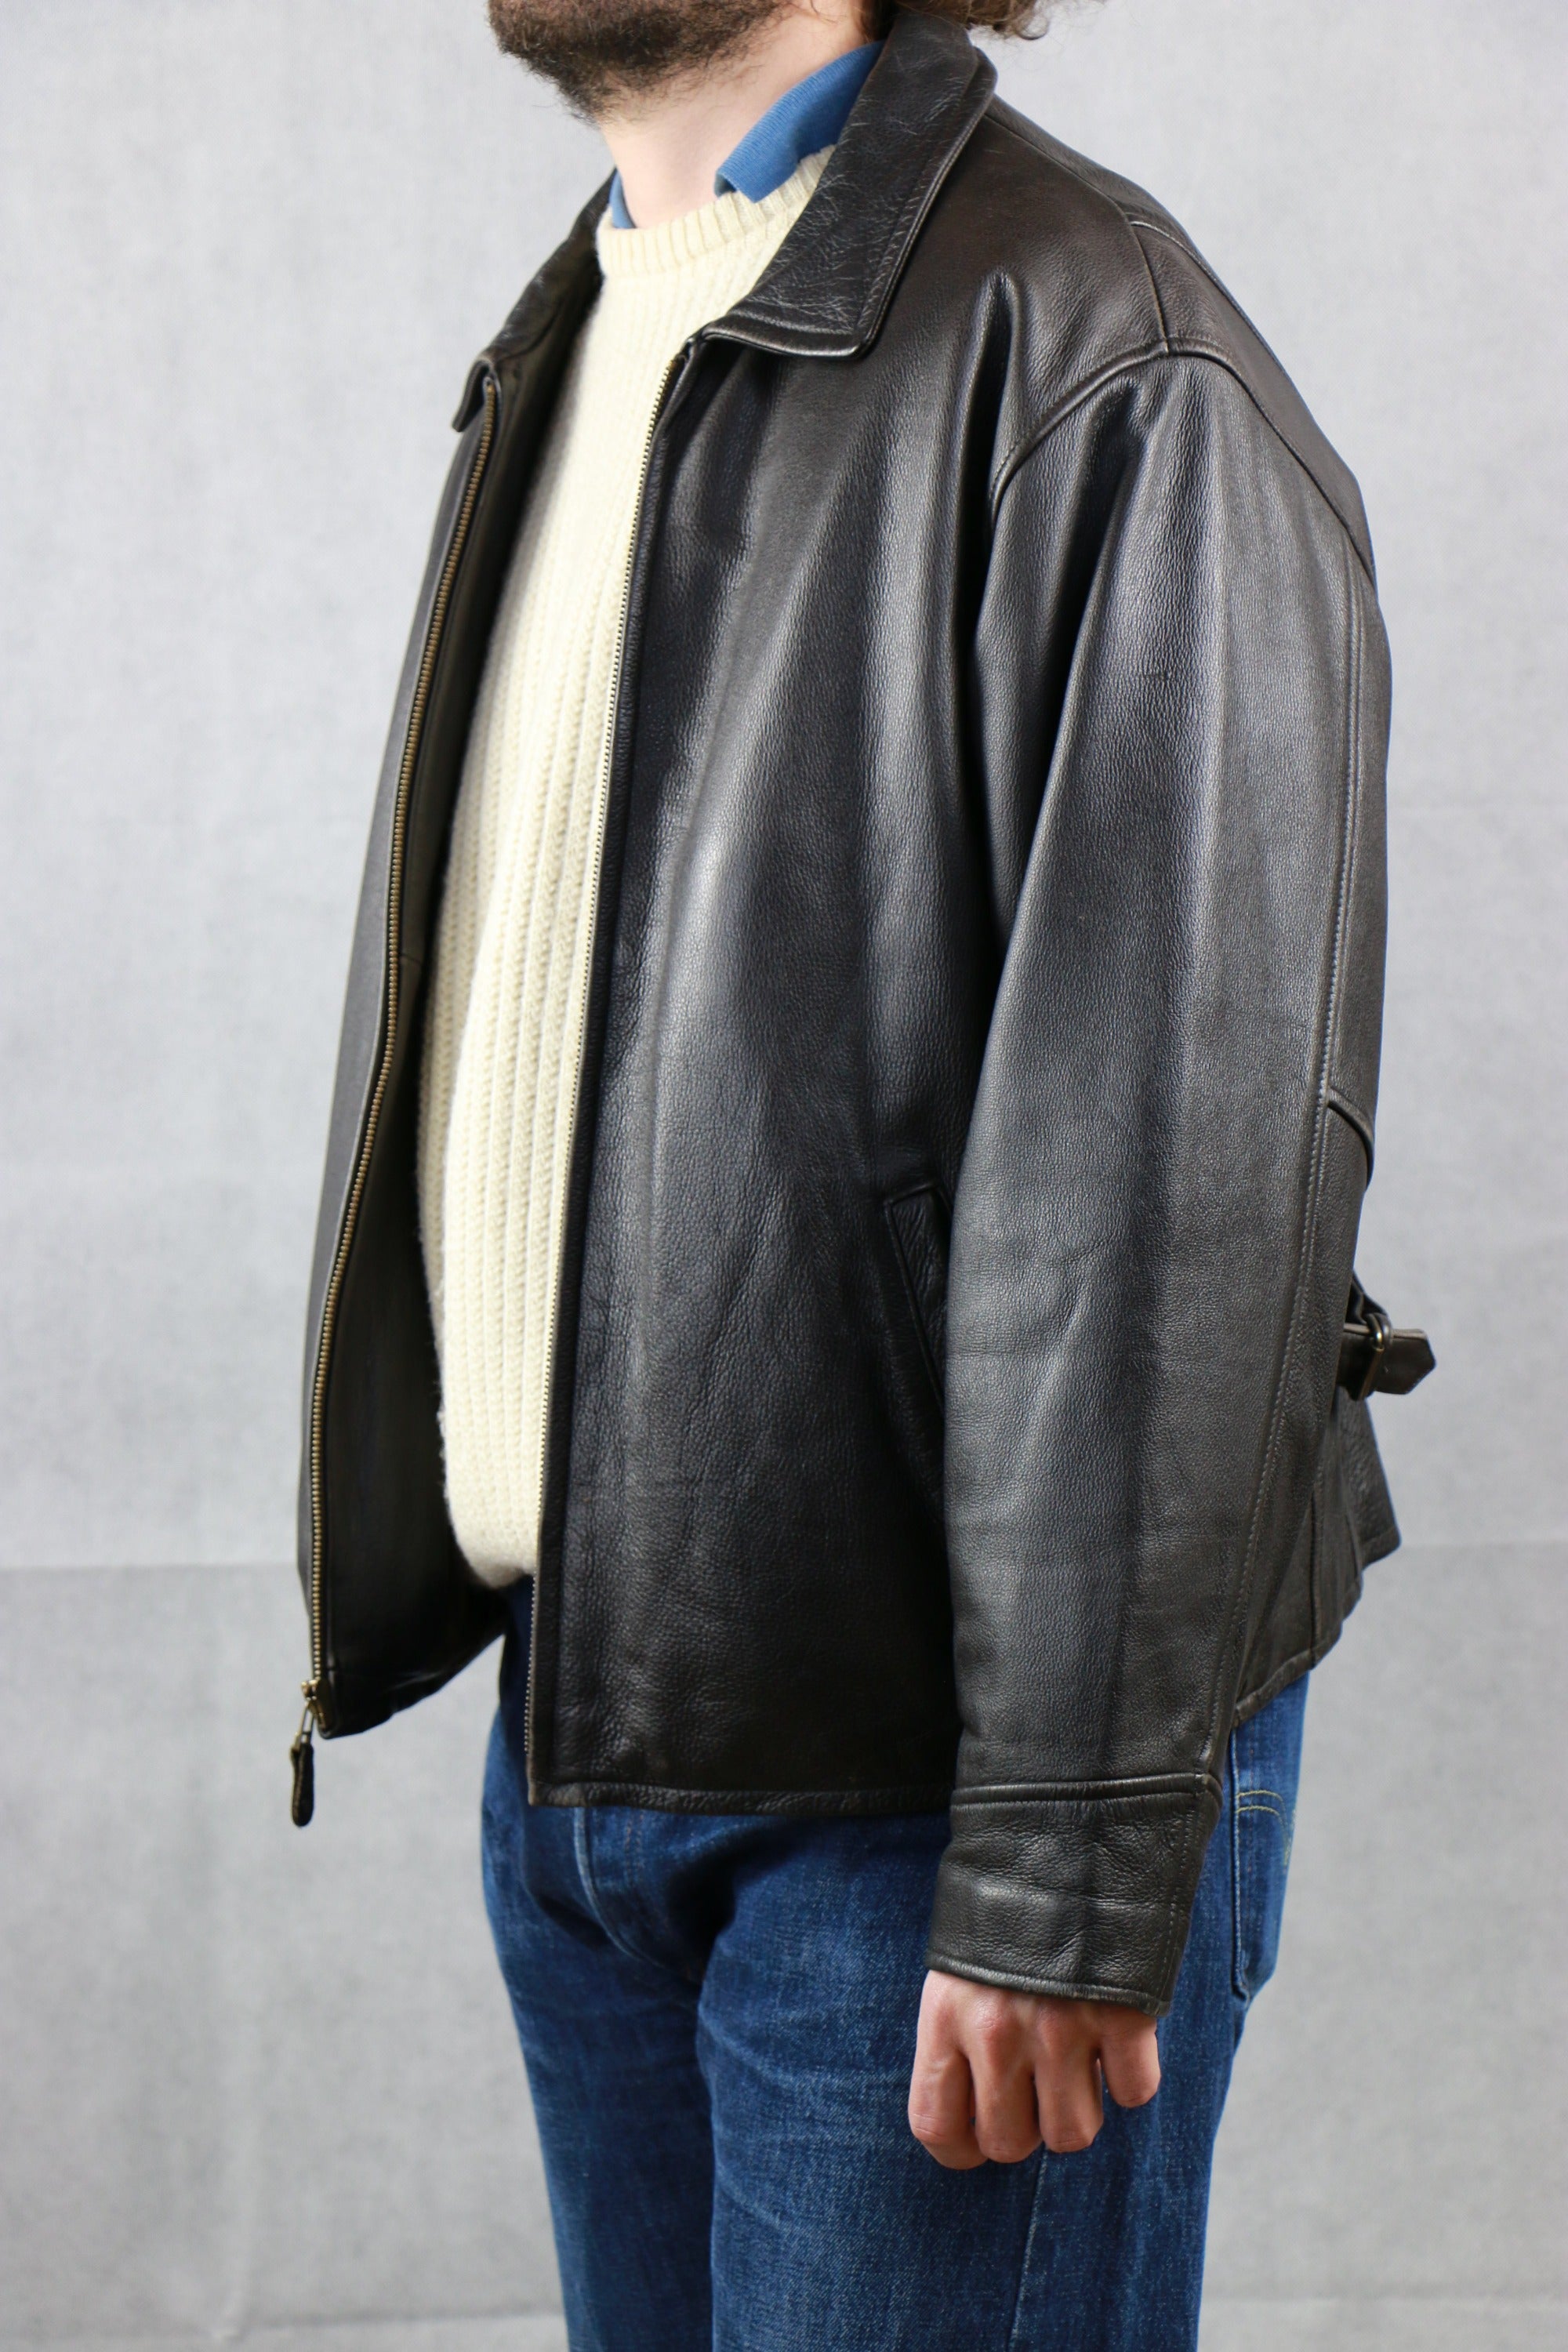 Eddie Bauer Leather Jacket ~ Vintage Store Clochard92.com